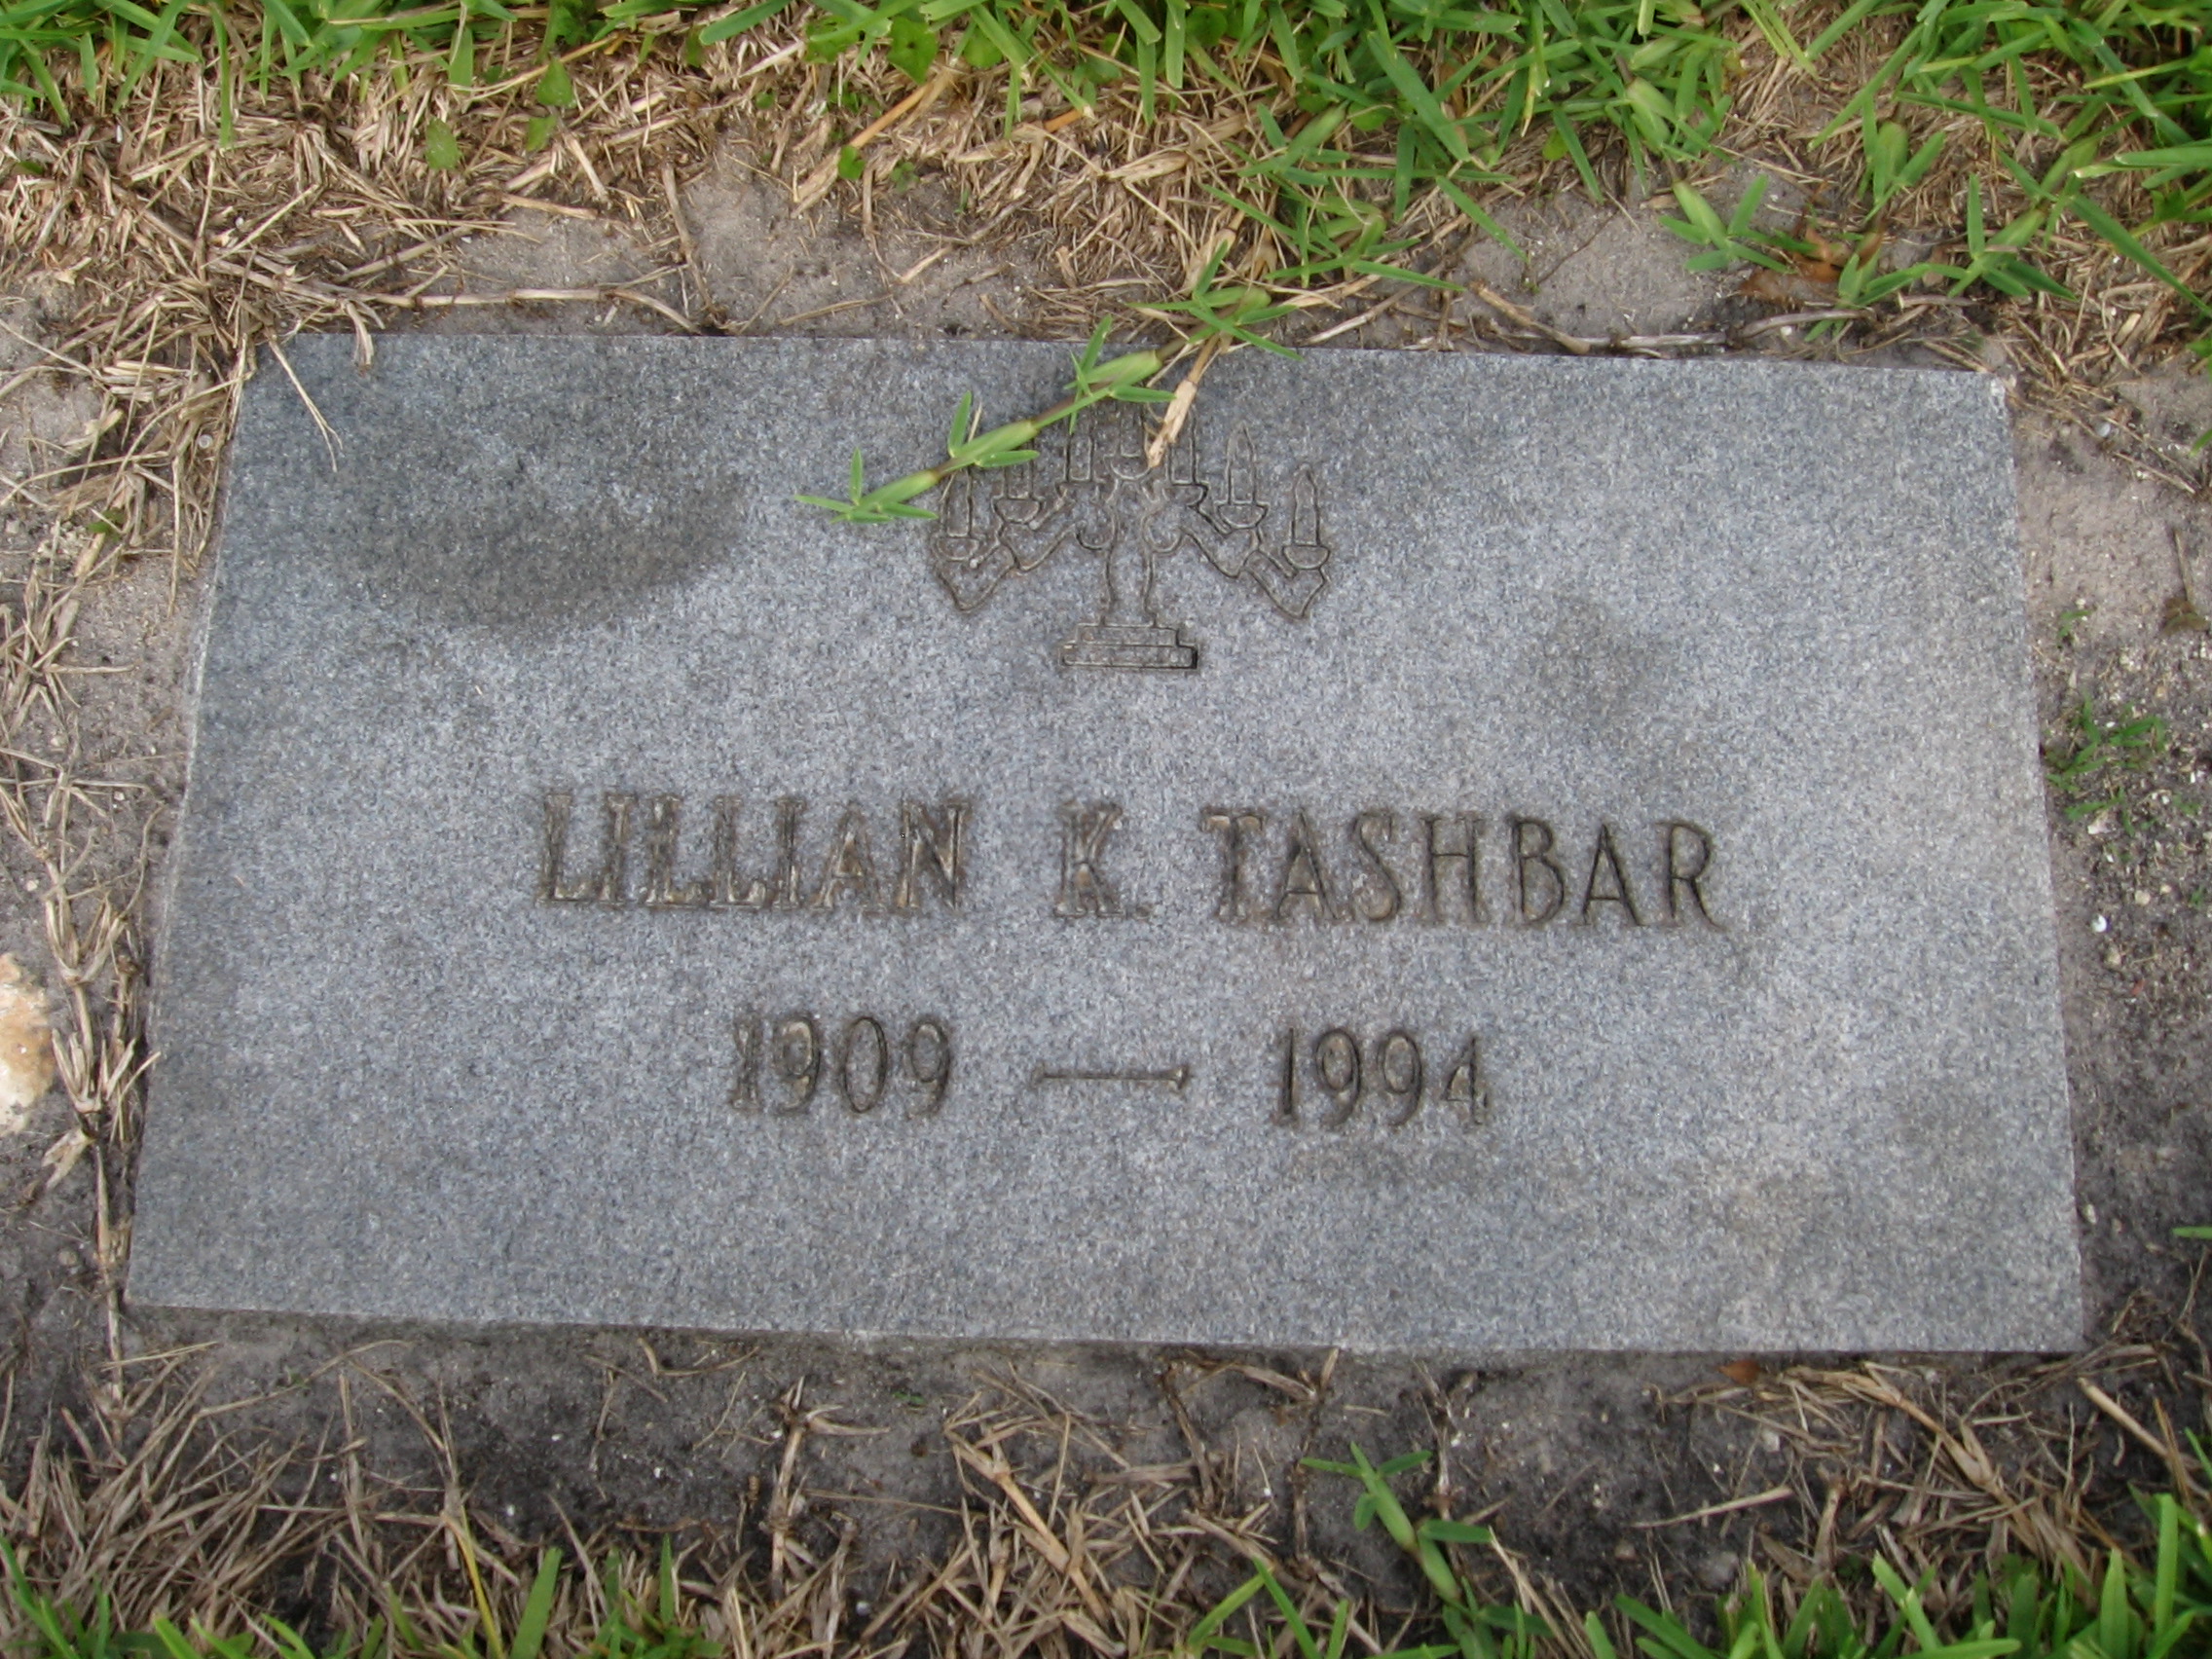 Lillian K Tashbar